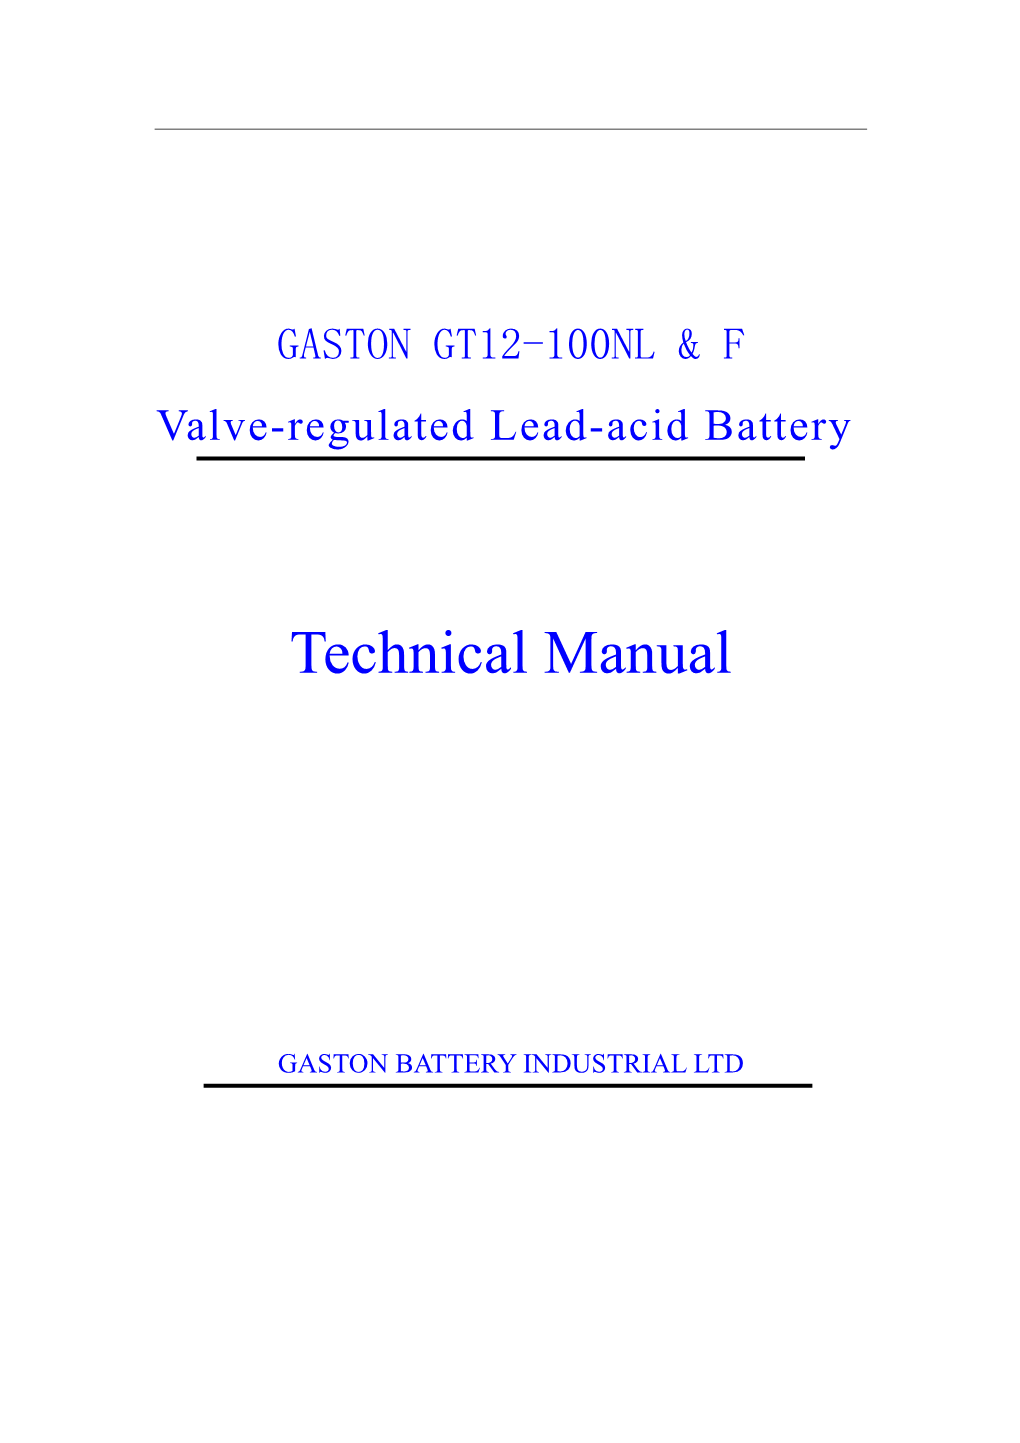 Valve-Regulated Lead-Acid Battery